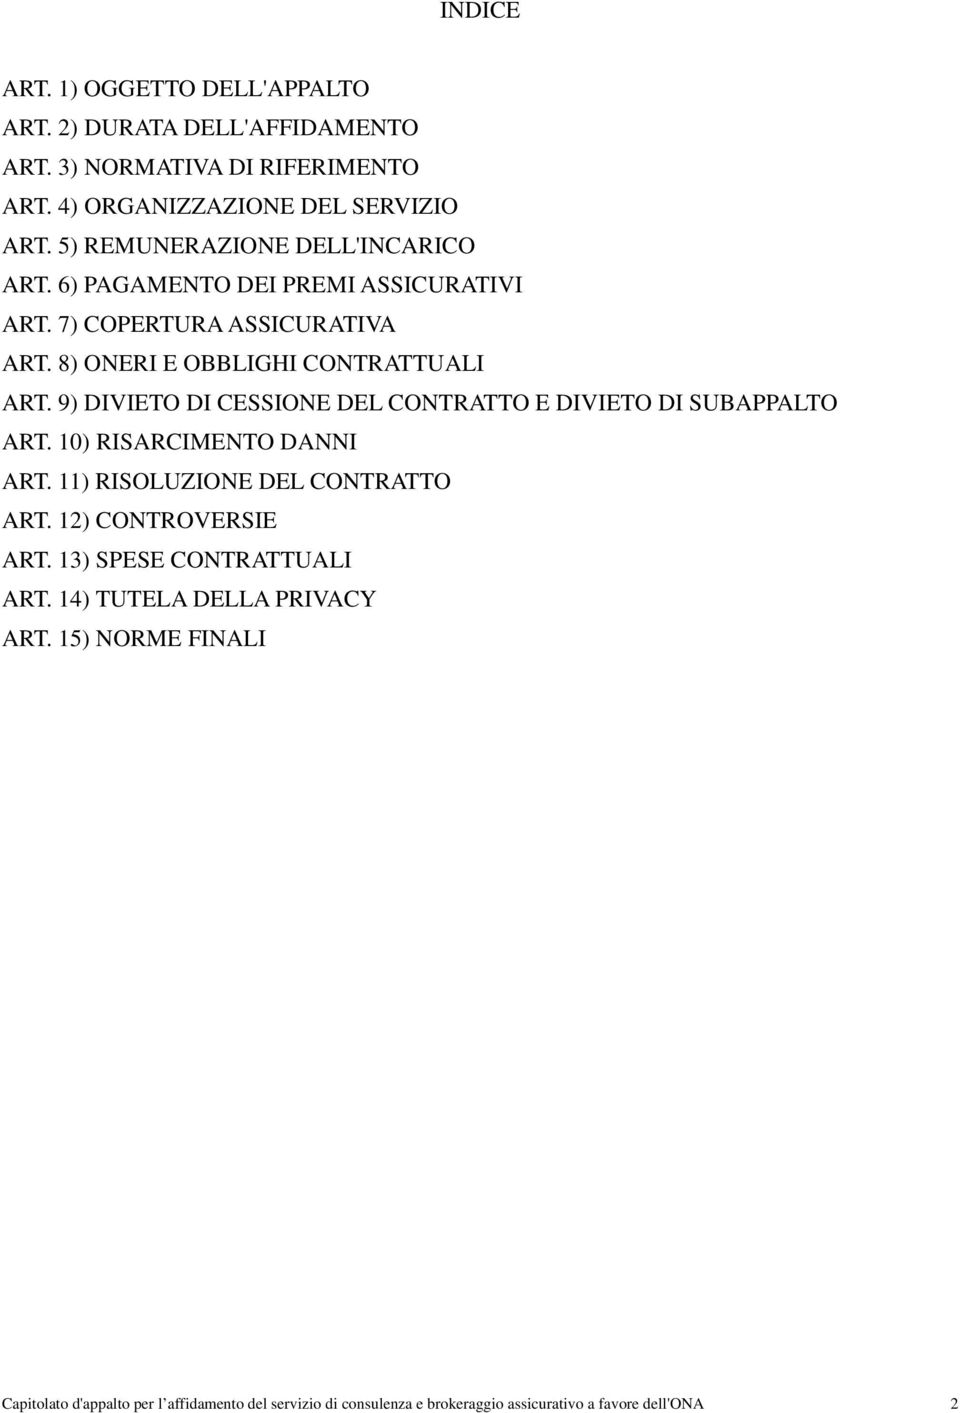 9) DIVIETO DI CESSIONE DEL CONTRATTO E DIVIETO DI SUBAPPALTO ART. 10) RISARCIMENTO DANNI ART. 11) RISOLUZIONE DEL CONTRATTO ART. 12) CONTROVERSIE ART.